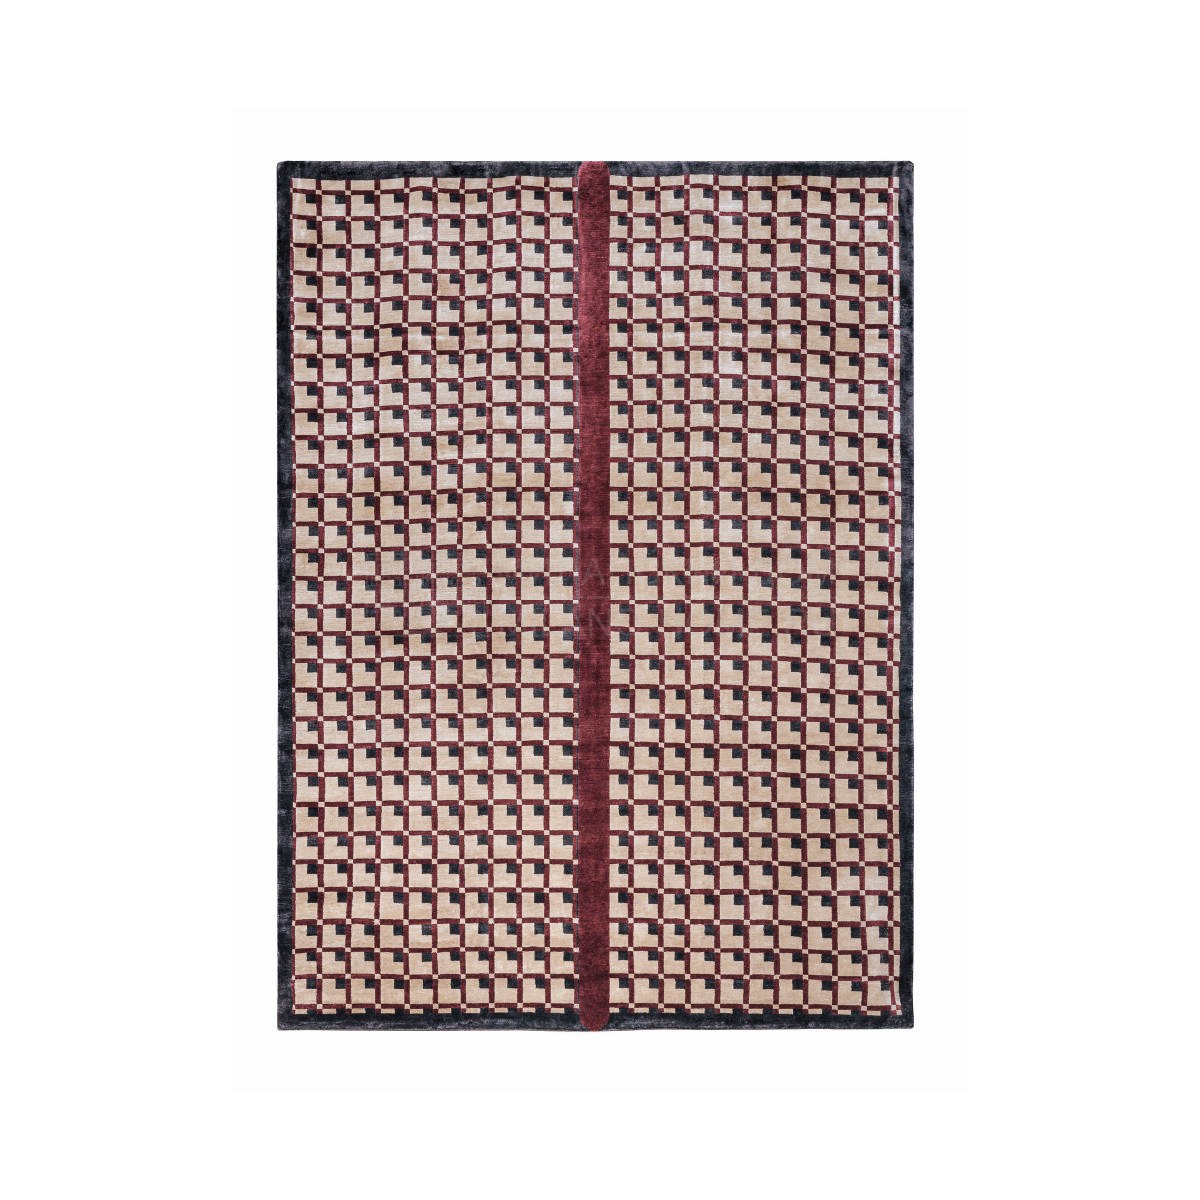 Ковер Eclipse square carpet из Италии фабрики TURRI